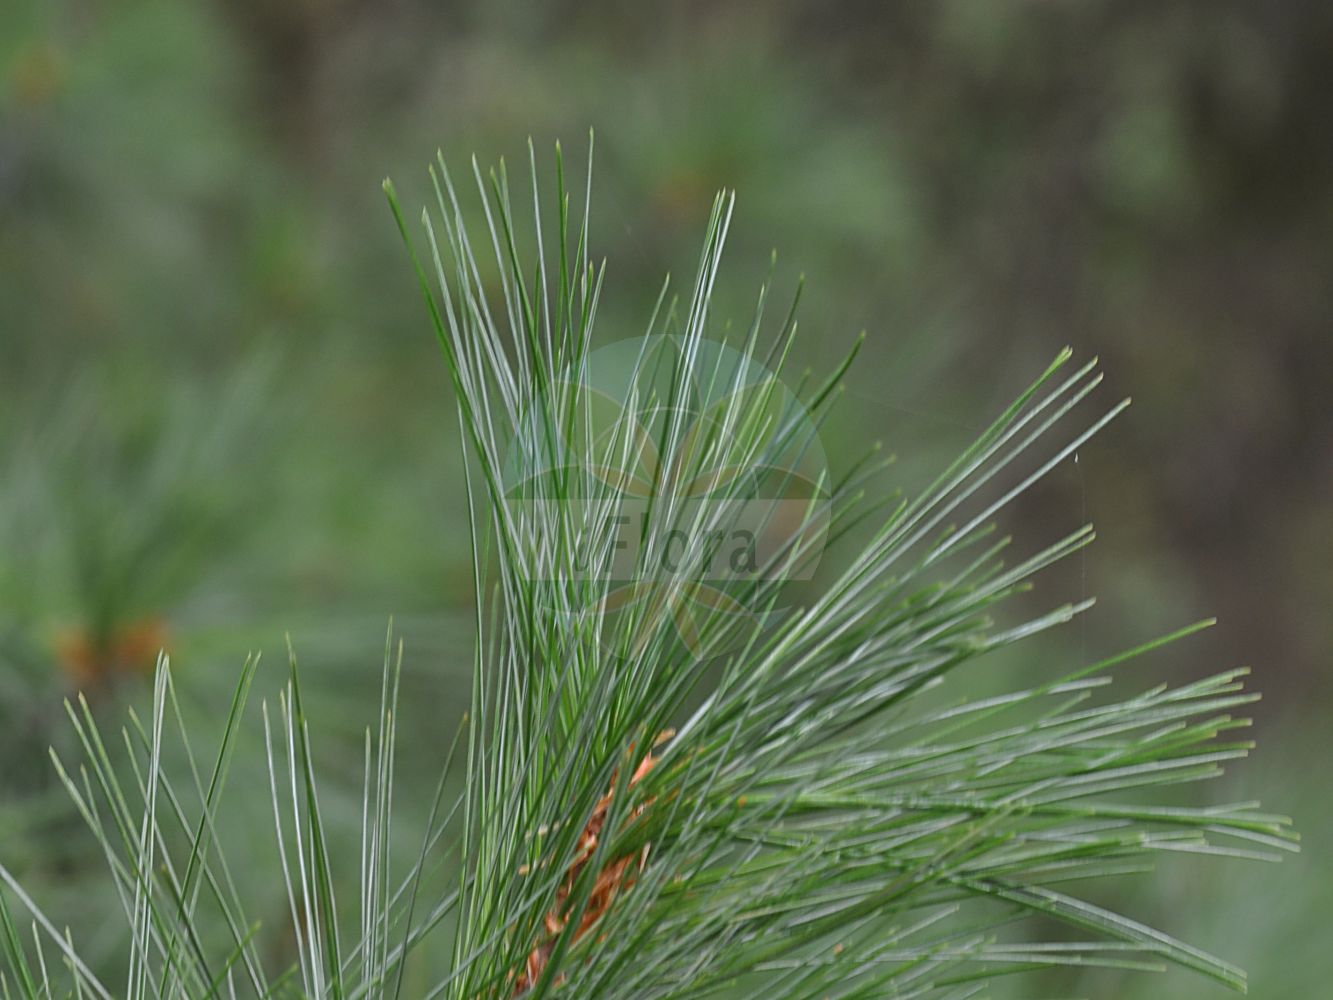 Foto von Pinus strobus (Weymouth-Kiefer - Weymouth Pine). Das Foto wurde in Mainz, Rheinland-Pfalz, Deutschland aufgenommen. ---- Photo of Pinus strobus (Weymouth-Kiefer - Weymouth Pine). The picture was taken in Mainz, Rhineland-Palatinate, Germany.(Pinus strobus,Weymouth-Kiefer,Weymouth Pine,Pinus strobus,Weymouth-Kiefer,Weymouth Pine,Eastern White Pine,Northern White Pine,White Pine,Yellow Pine,Pinus,Kiefer,Pine,Pinaceae,Kieferngewächse,Pine family)